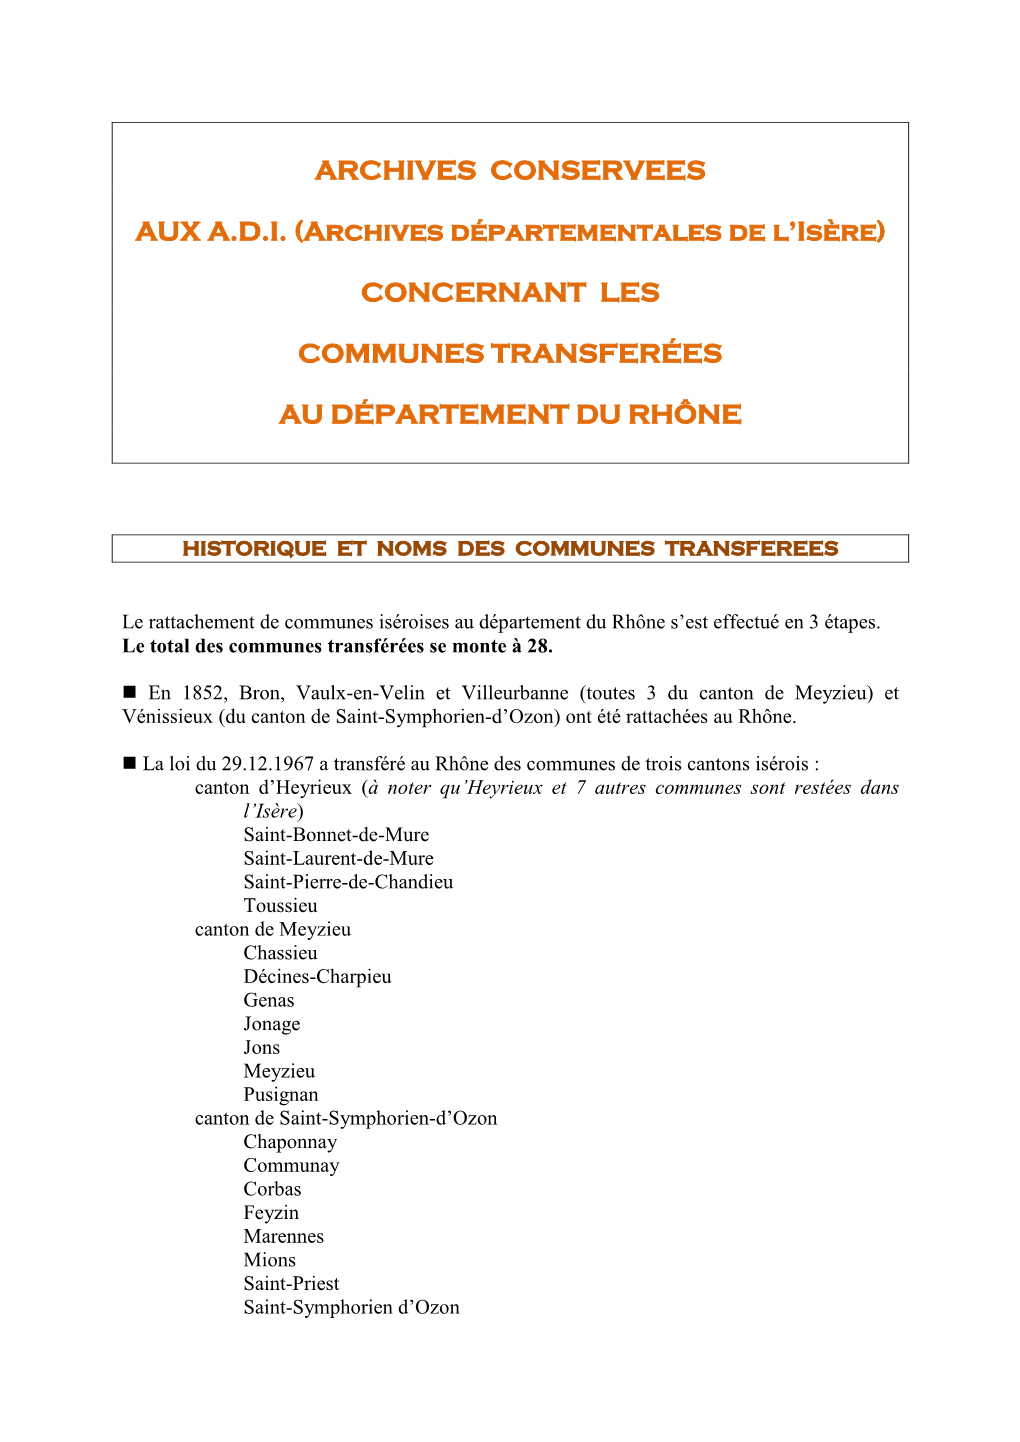 Liste Des Communes Transférées Au Département Du Rhône